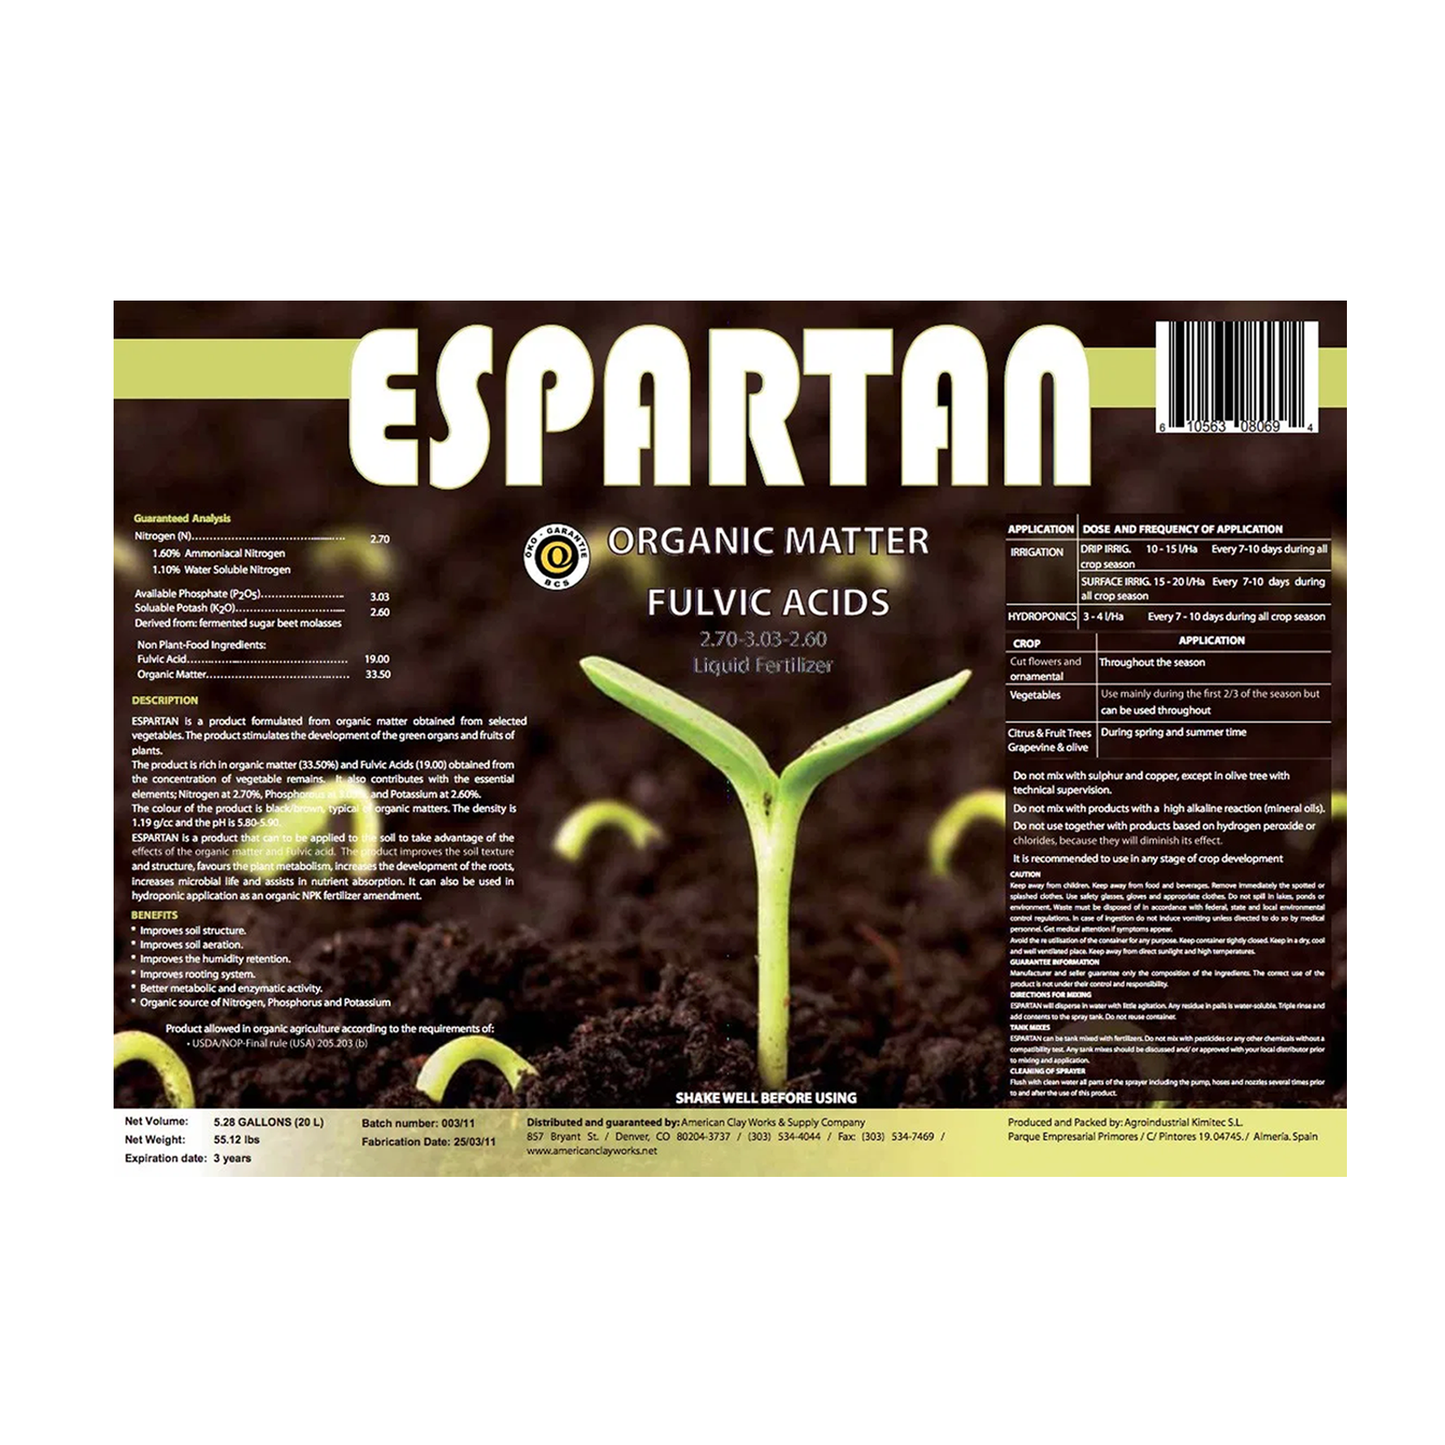 Espartan Organic Matter